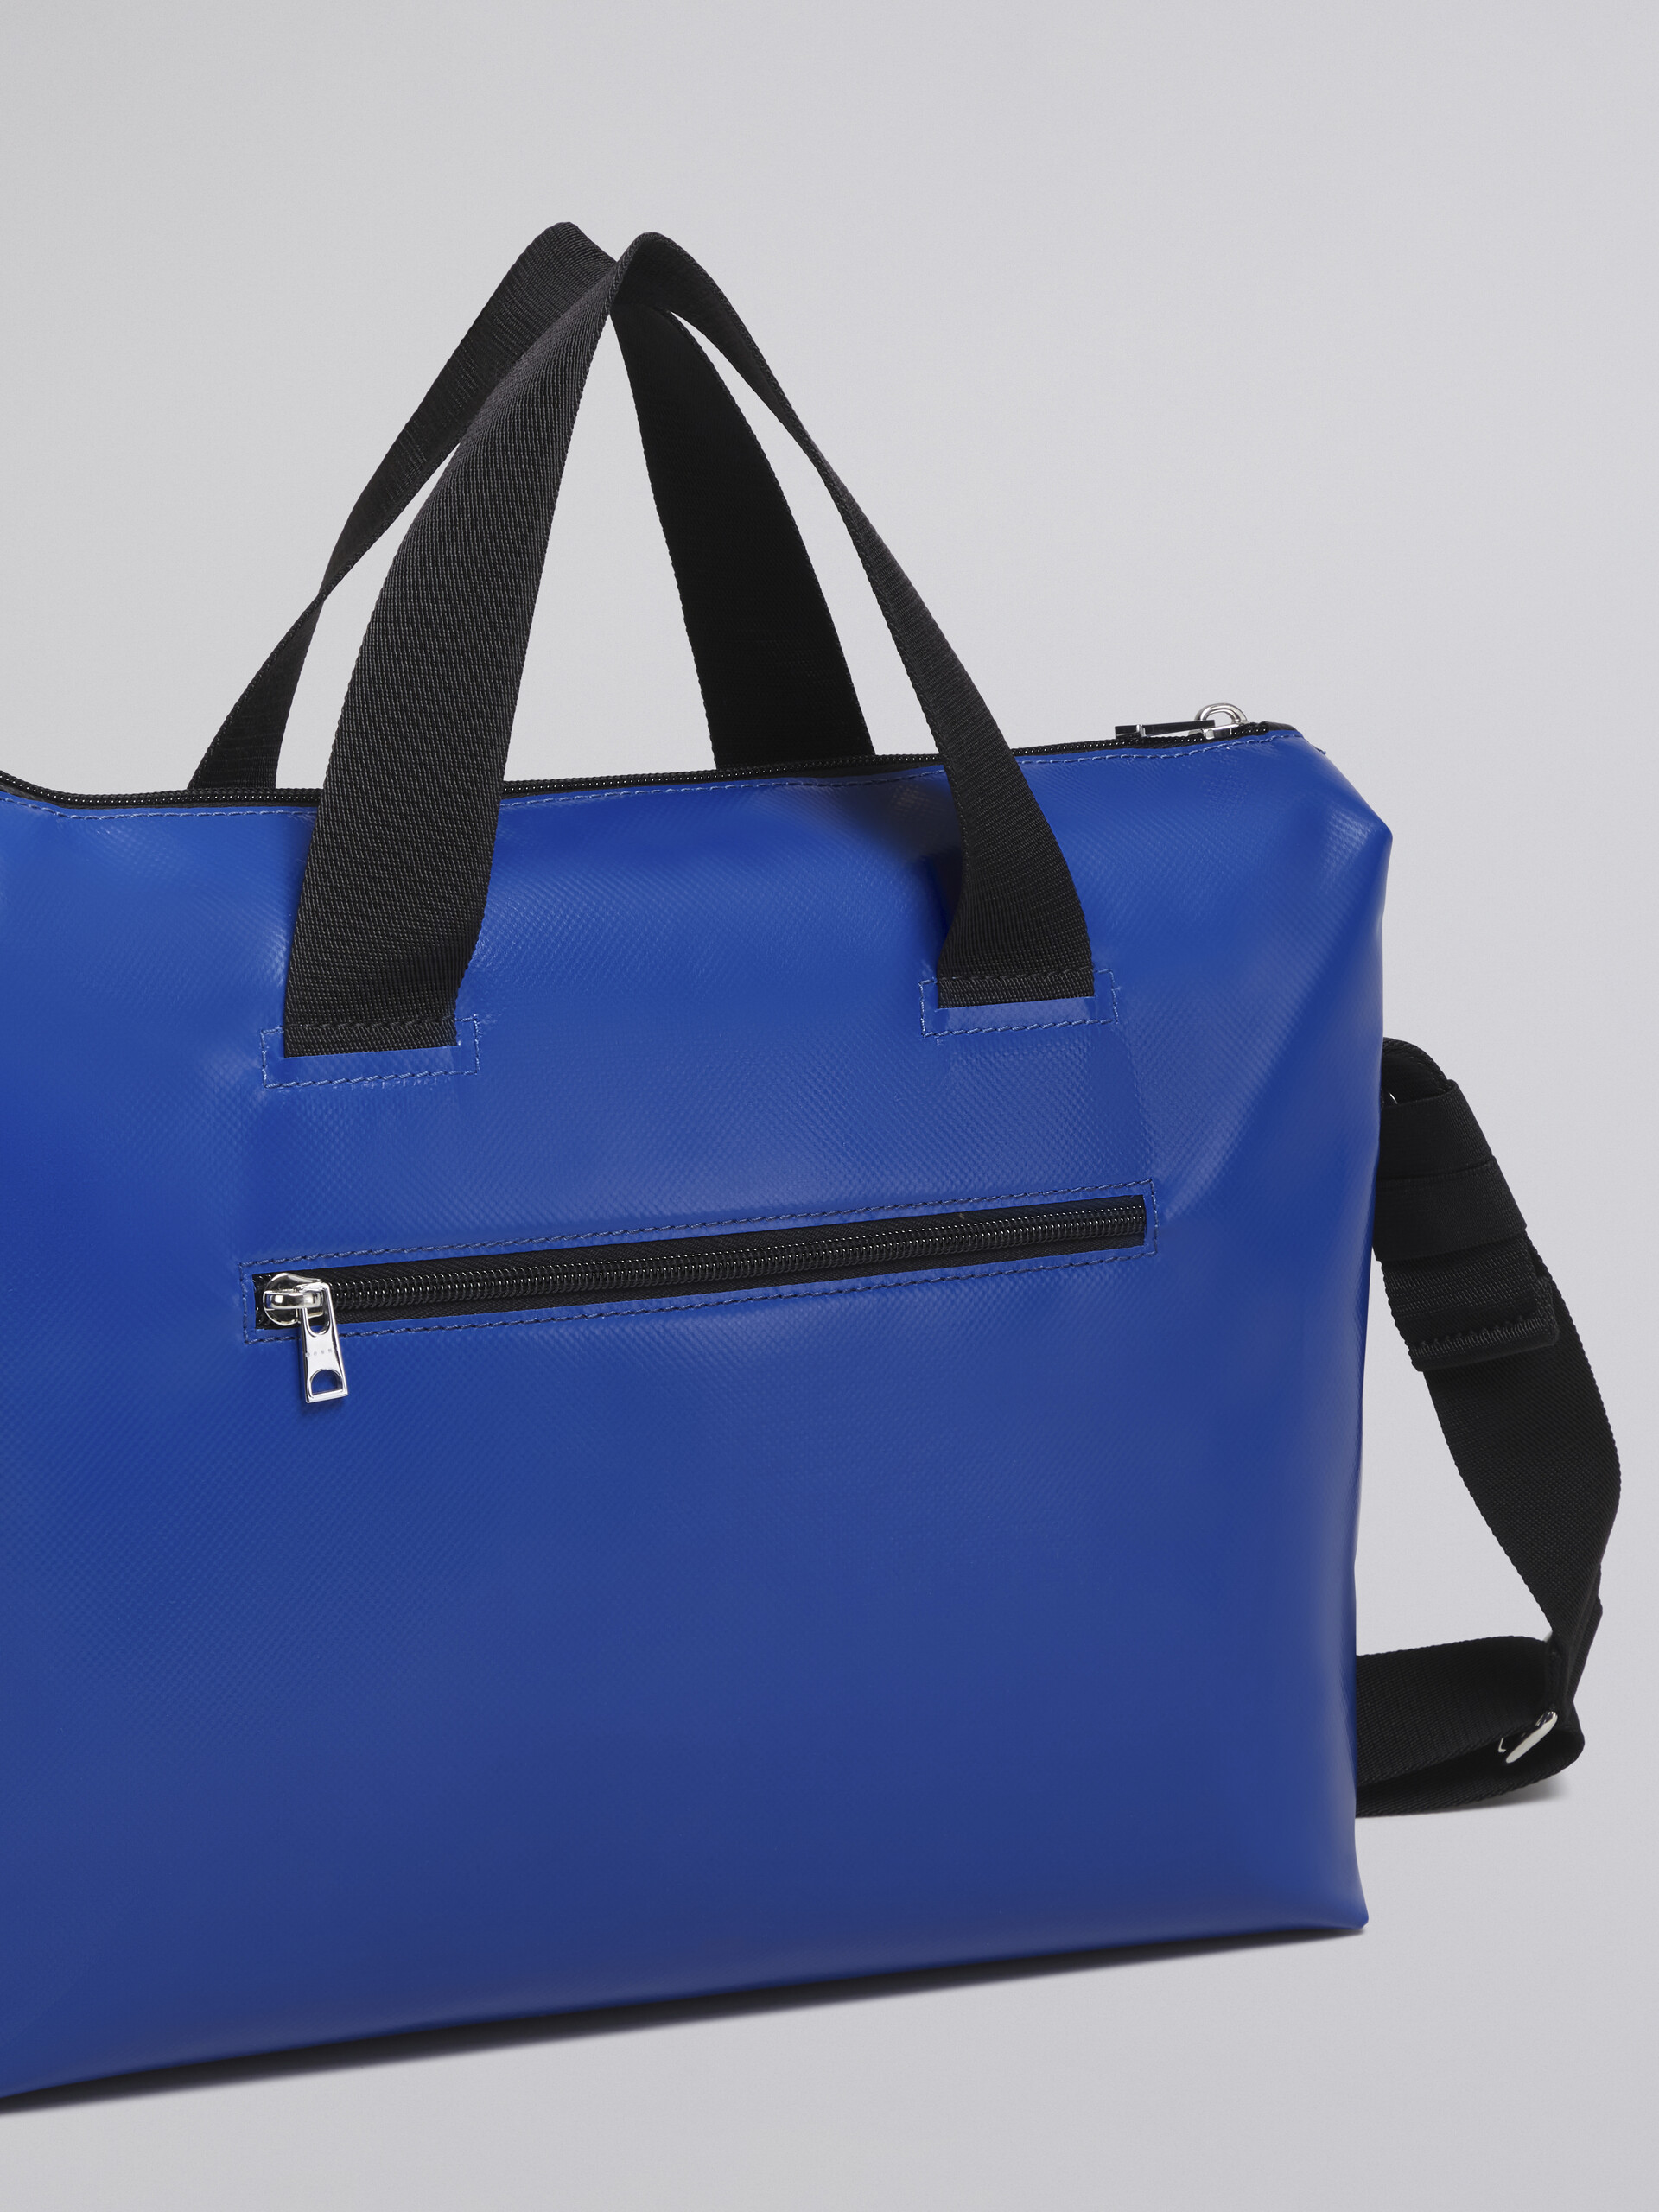 Black and blue TRIBECA bag - Handbags - Image 5